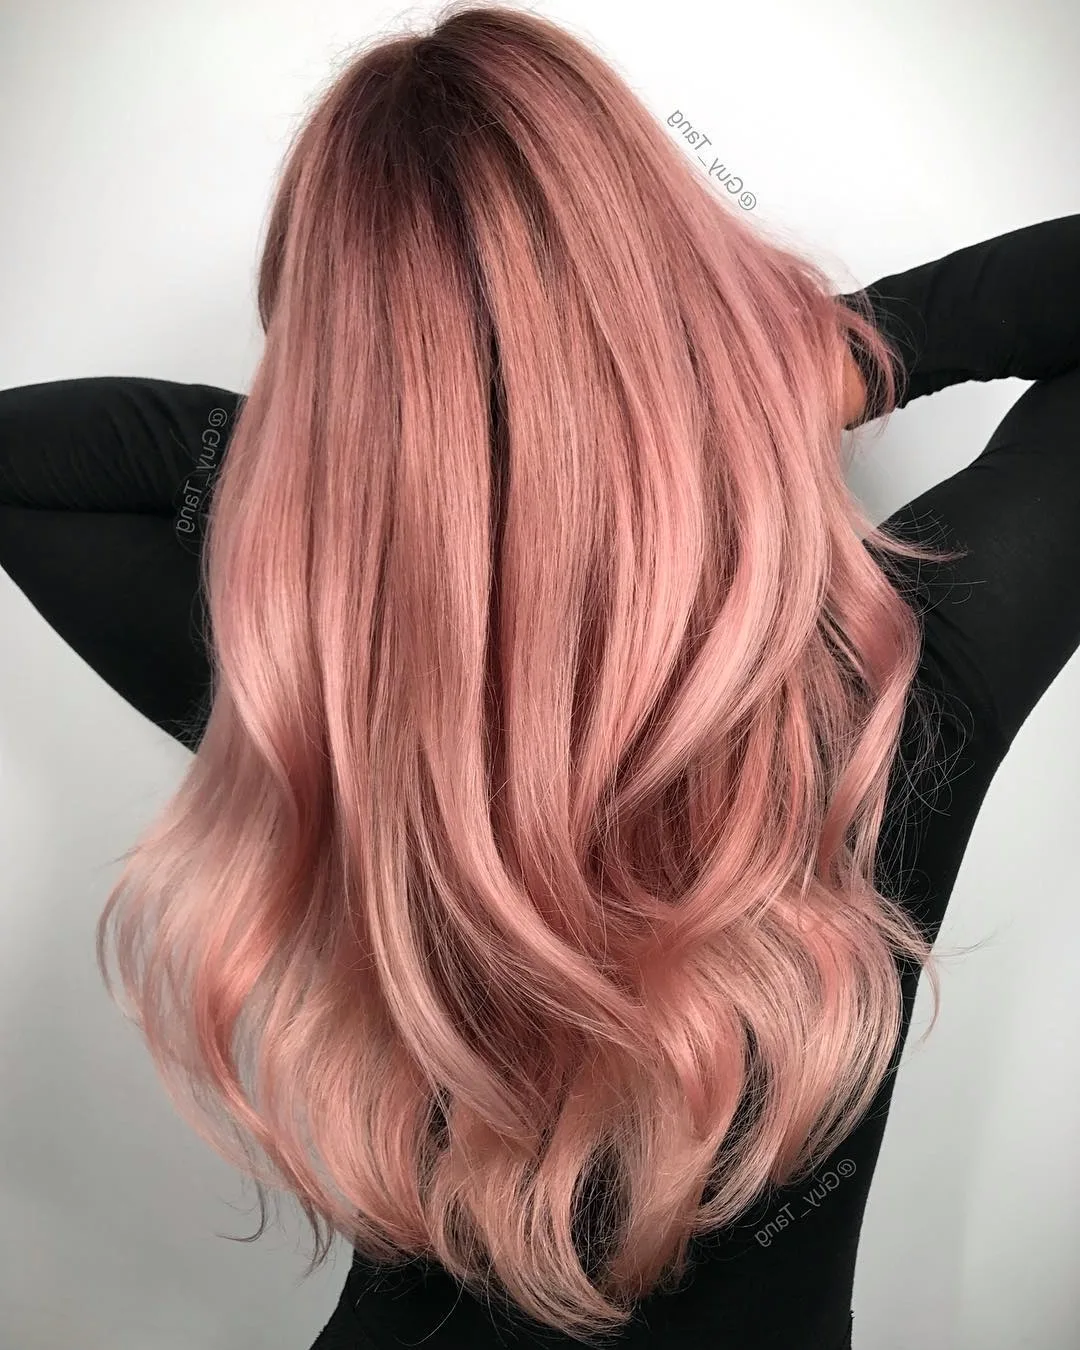 Окрашивание волос в розовый цвет | Барбершоп Я